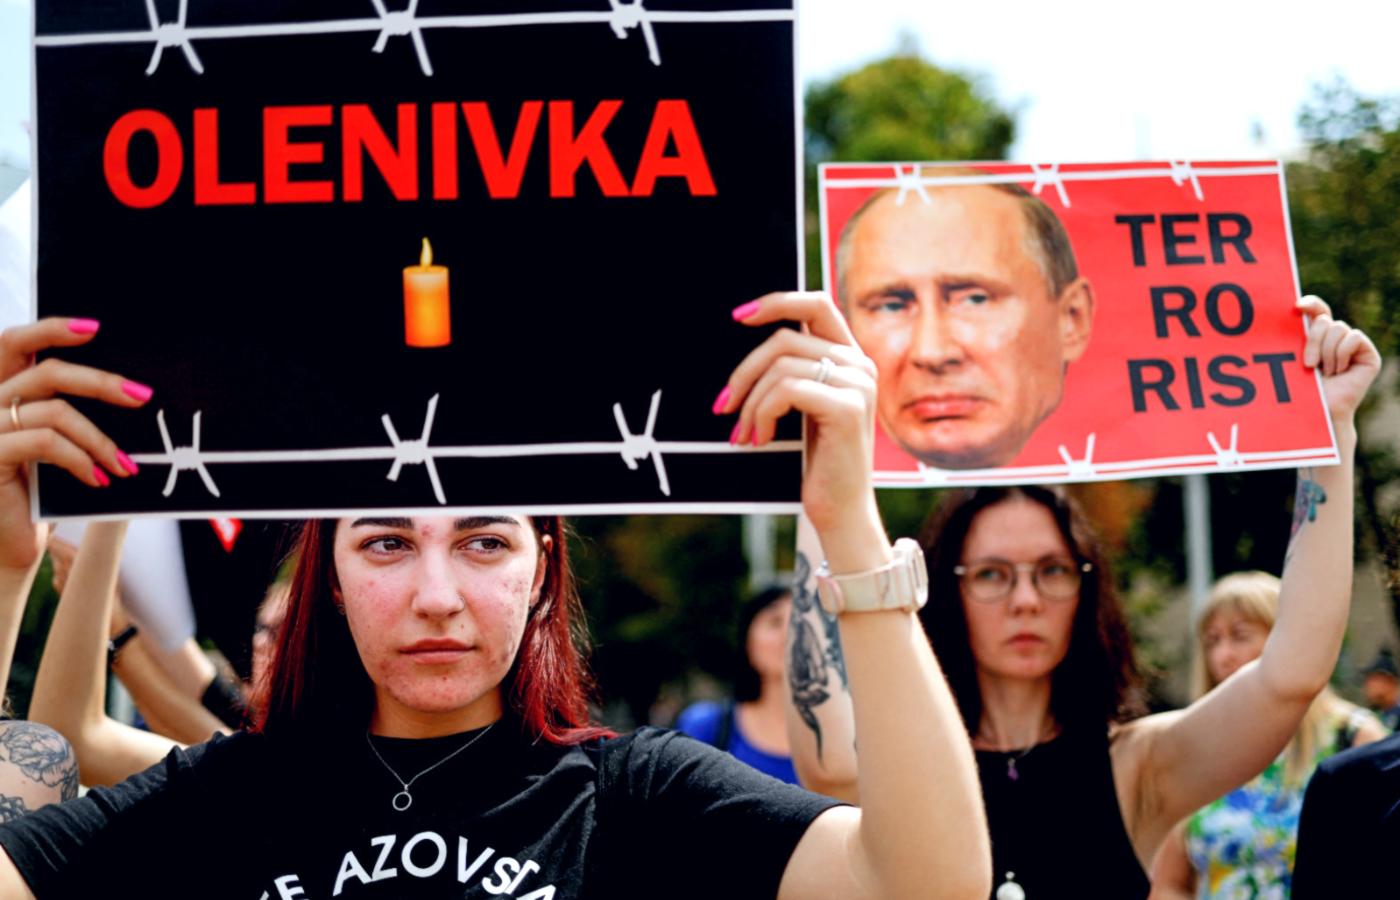 Protest bliskich obrońców Azowstalu domagających się uznania Rosji za sponsora terroryzmu. Kijów, 30 lipca 2022 r.